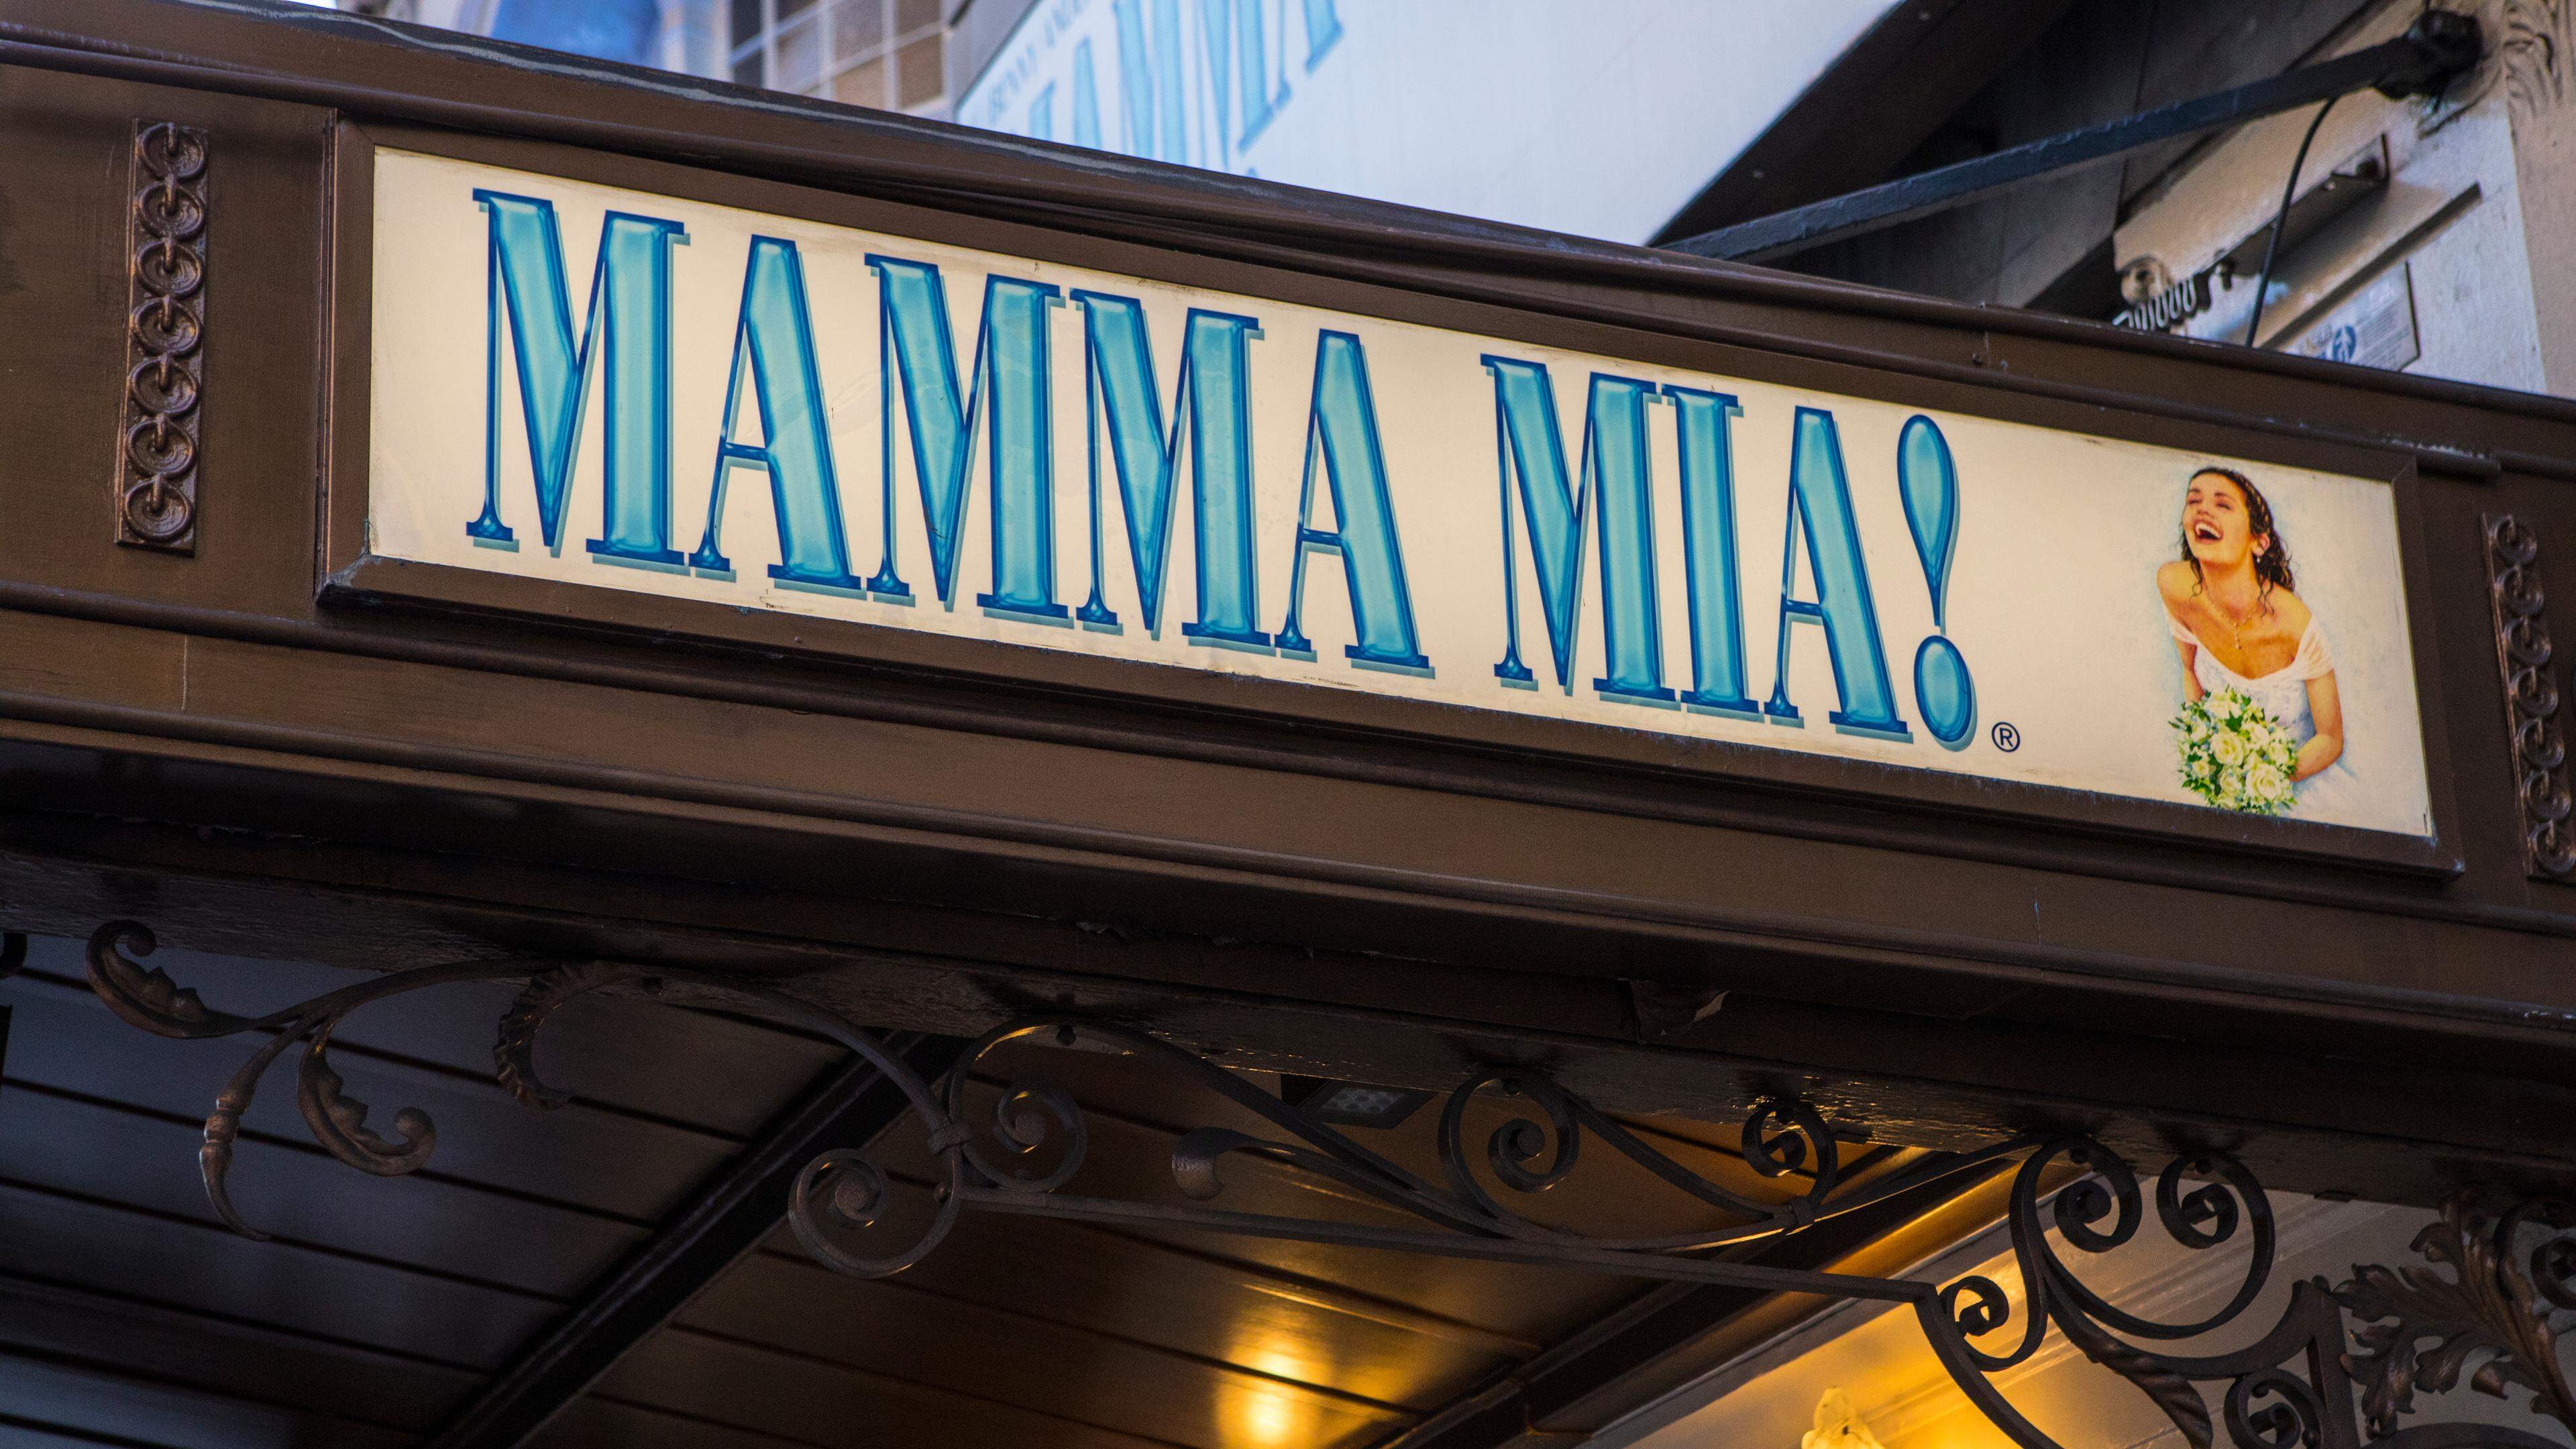 Mamma Mia! tourne depuis 25 ans. La première représentation remonte à 1999 à Londres.